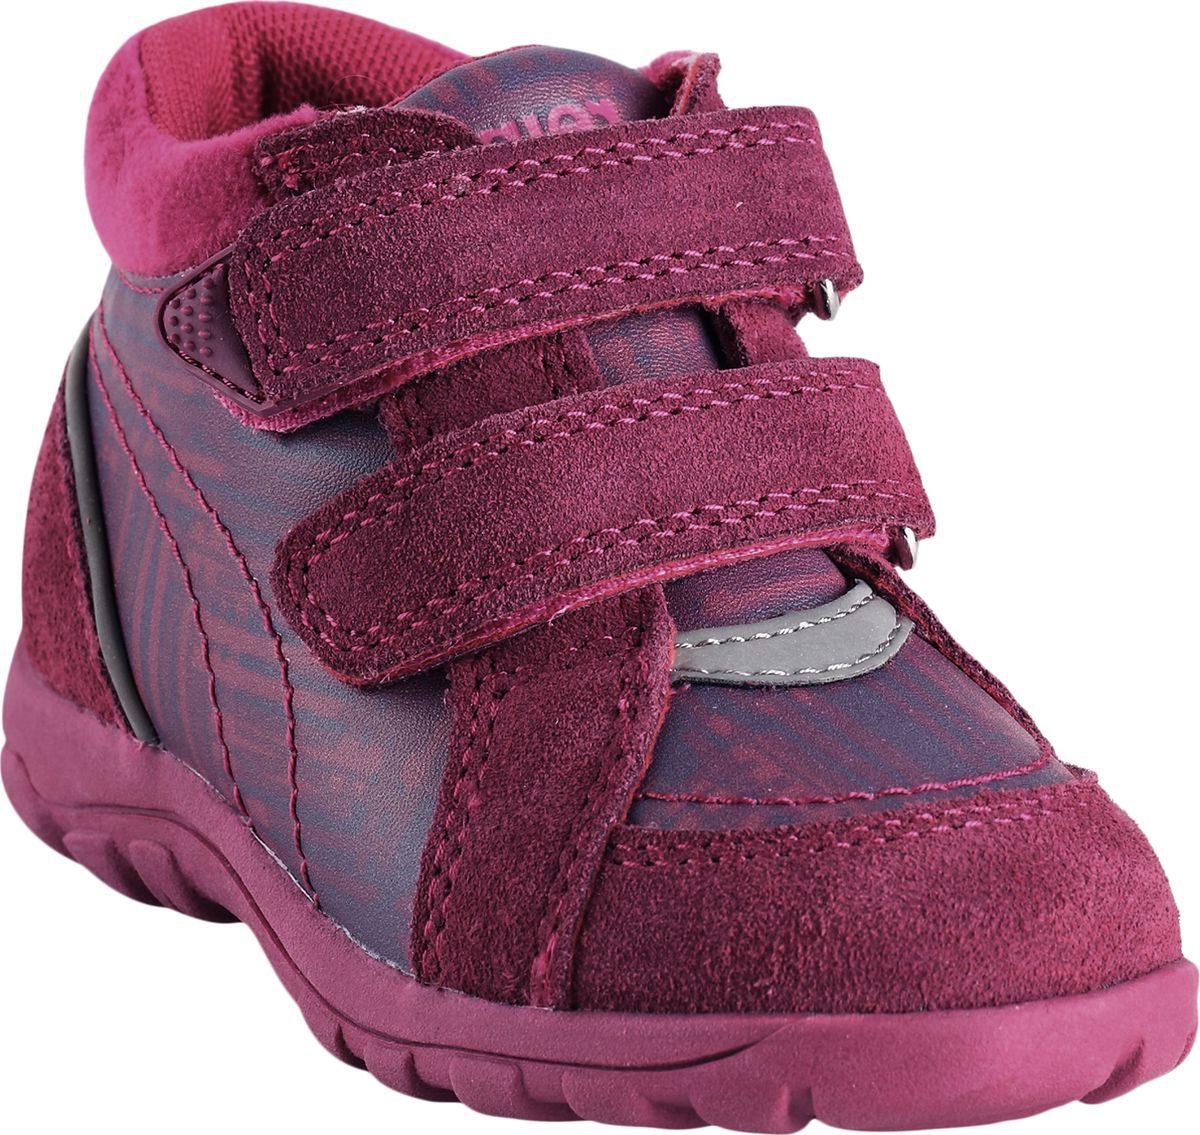 Ботинки детские Reima Lotte, цвет: розовый. 5693503691. Размер 20